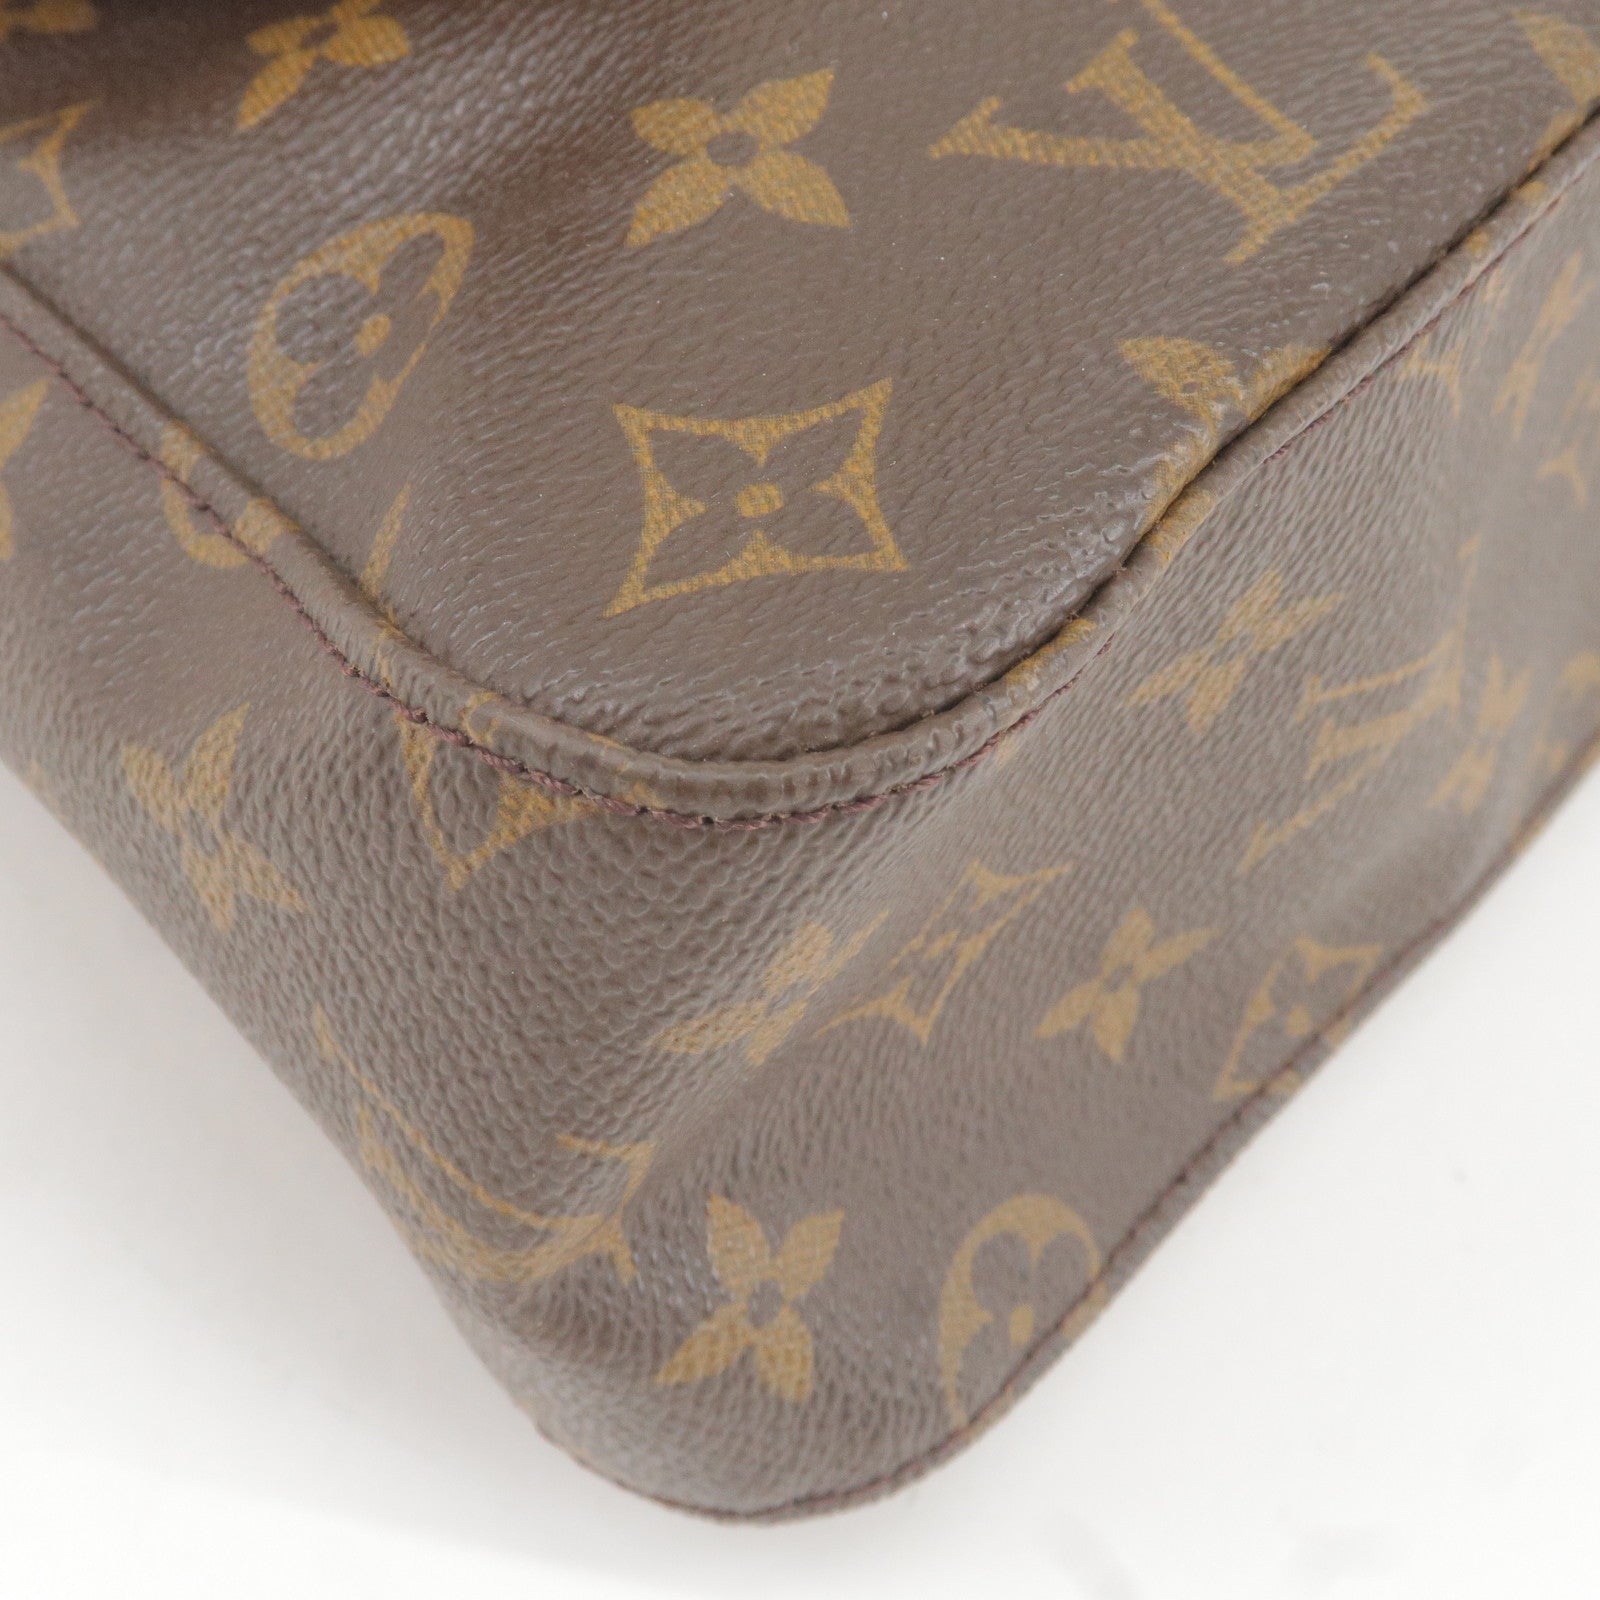 Louis Vuitton Monceau Black Leather Handbag (Pre-Owned)